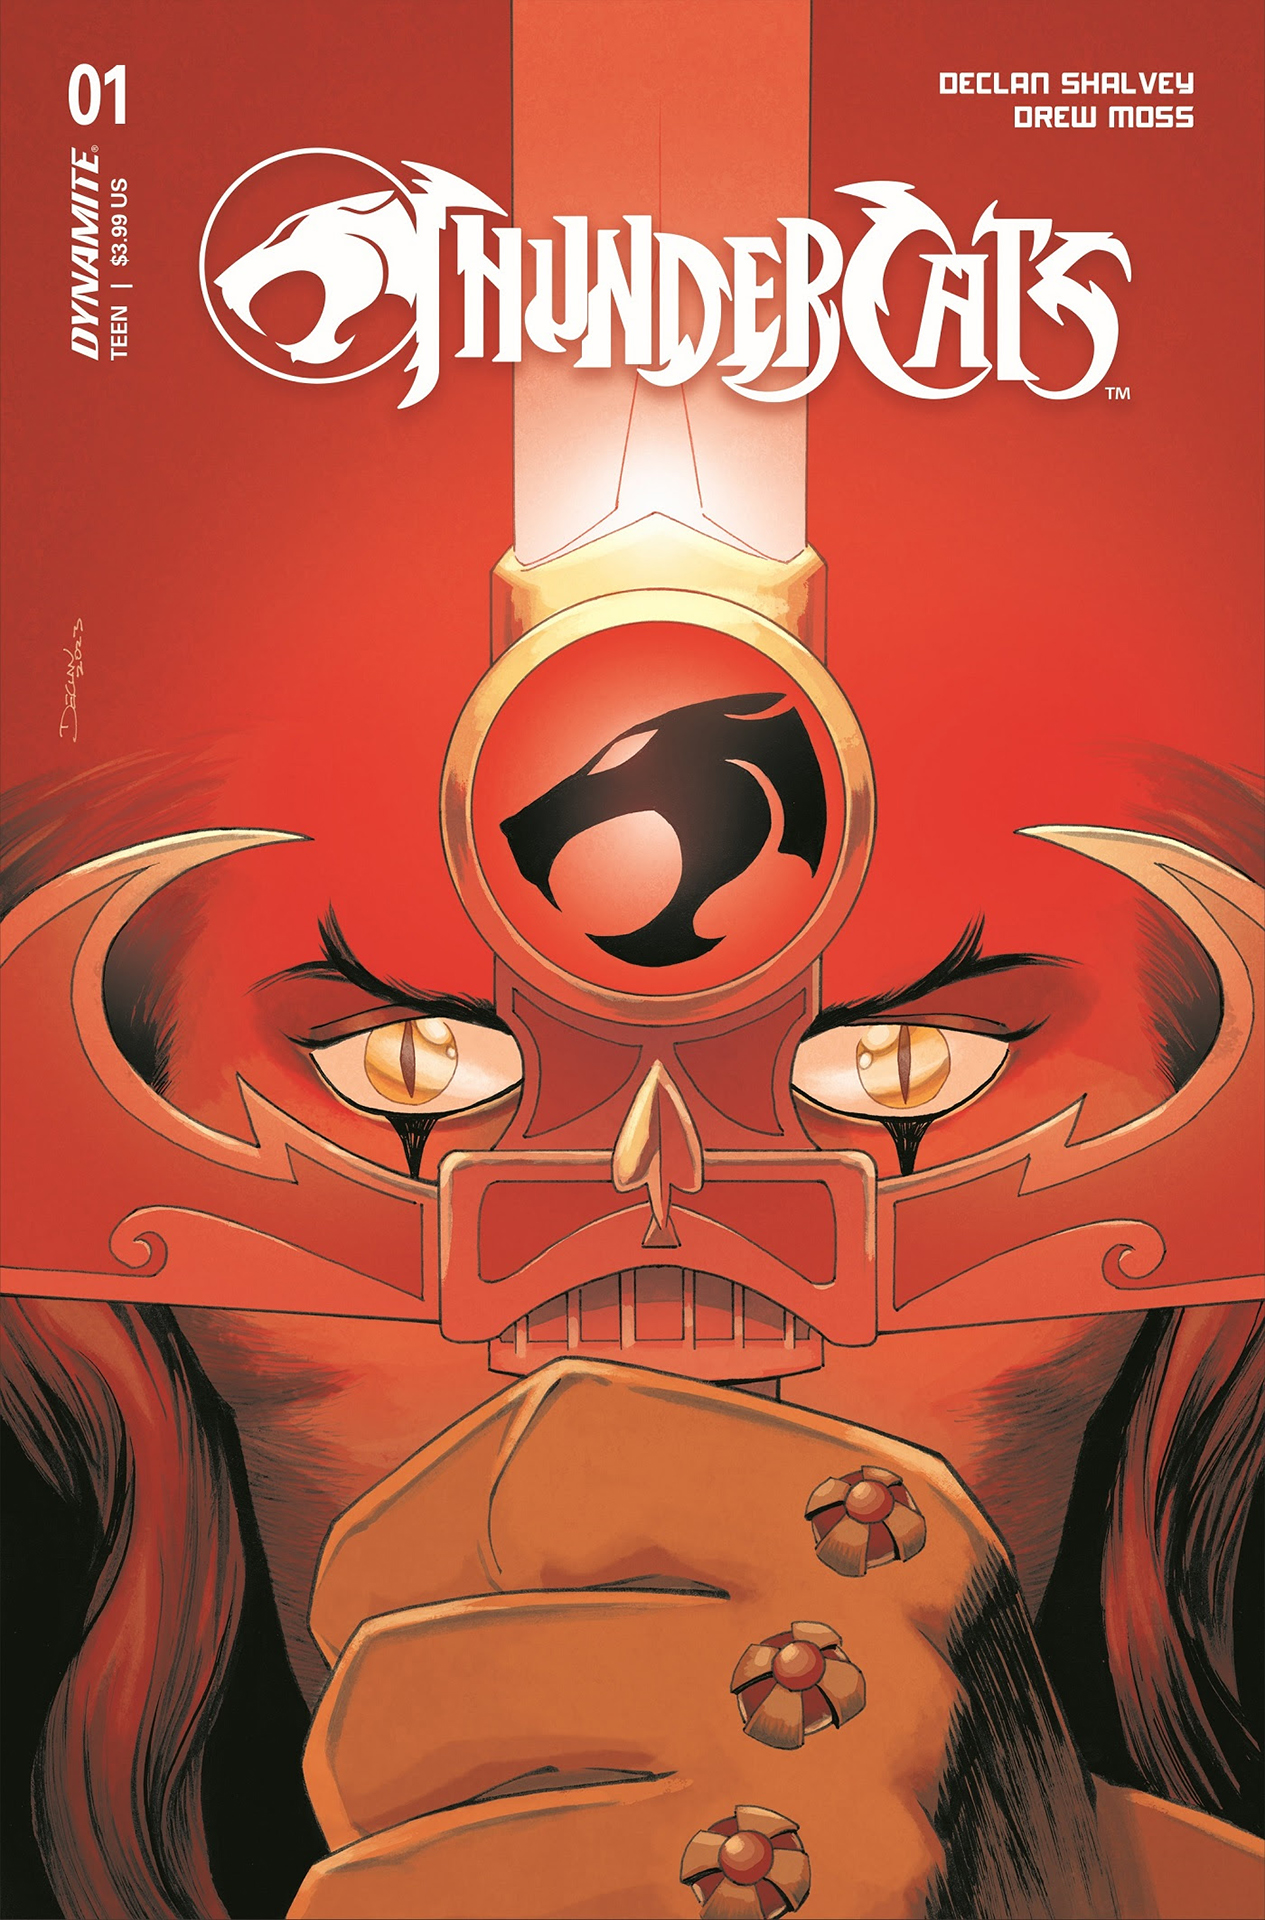 Arte de portada de Thundercats #1 por Drew Moss